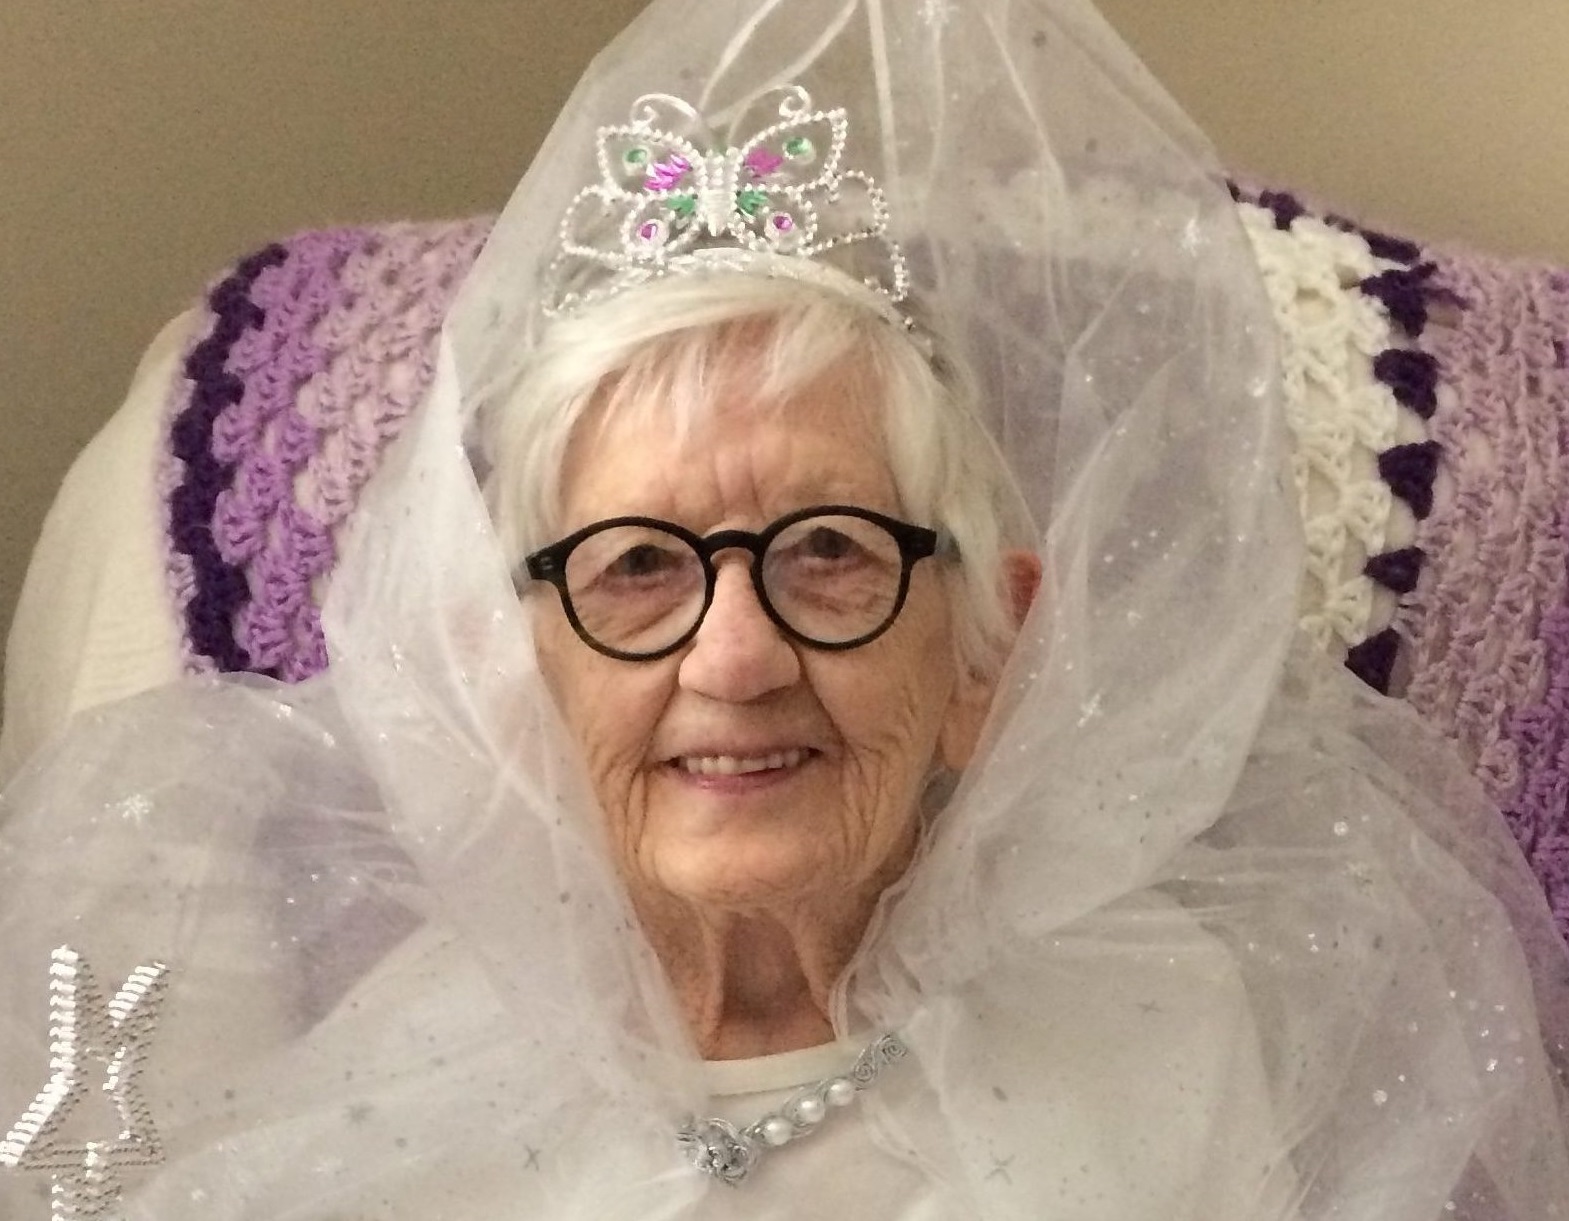 On her 110th birthday. (Source: Belmont Village)